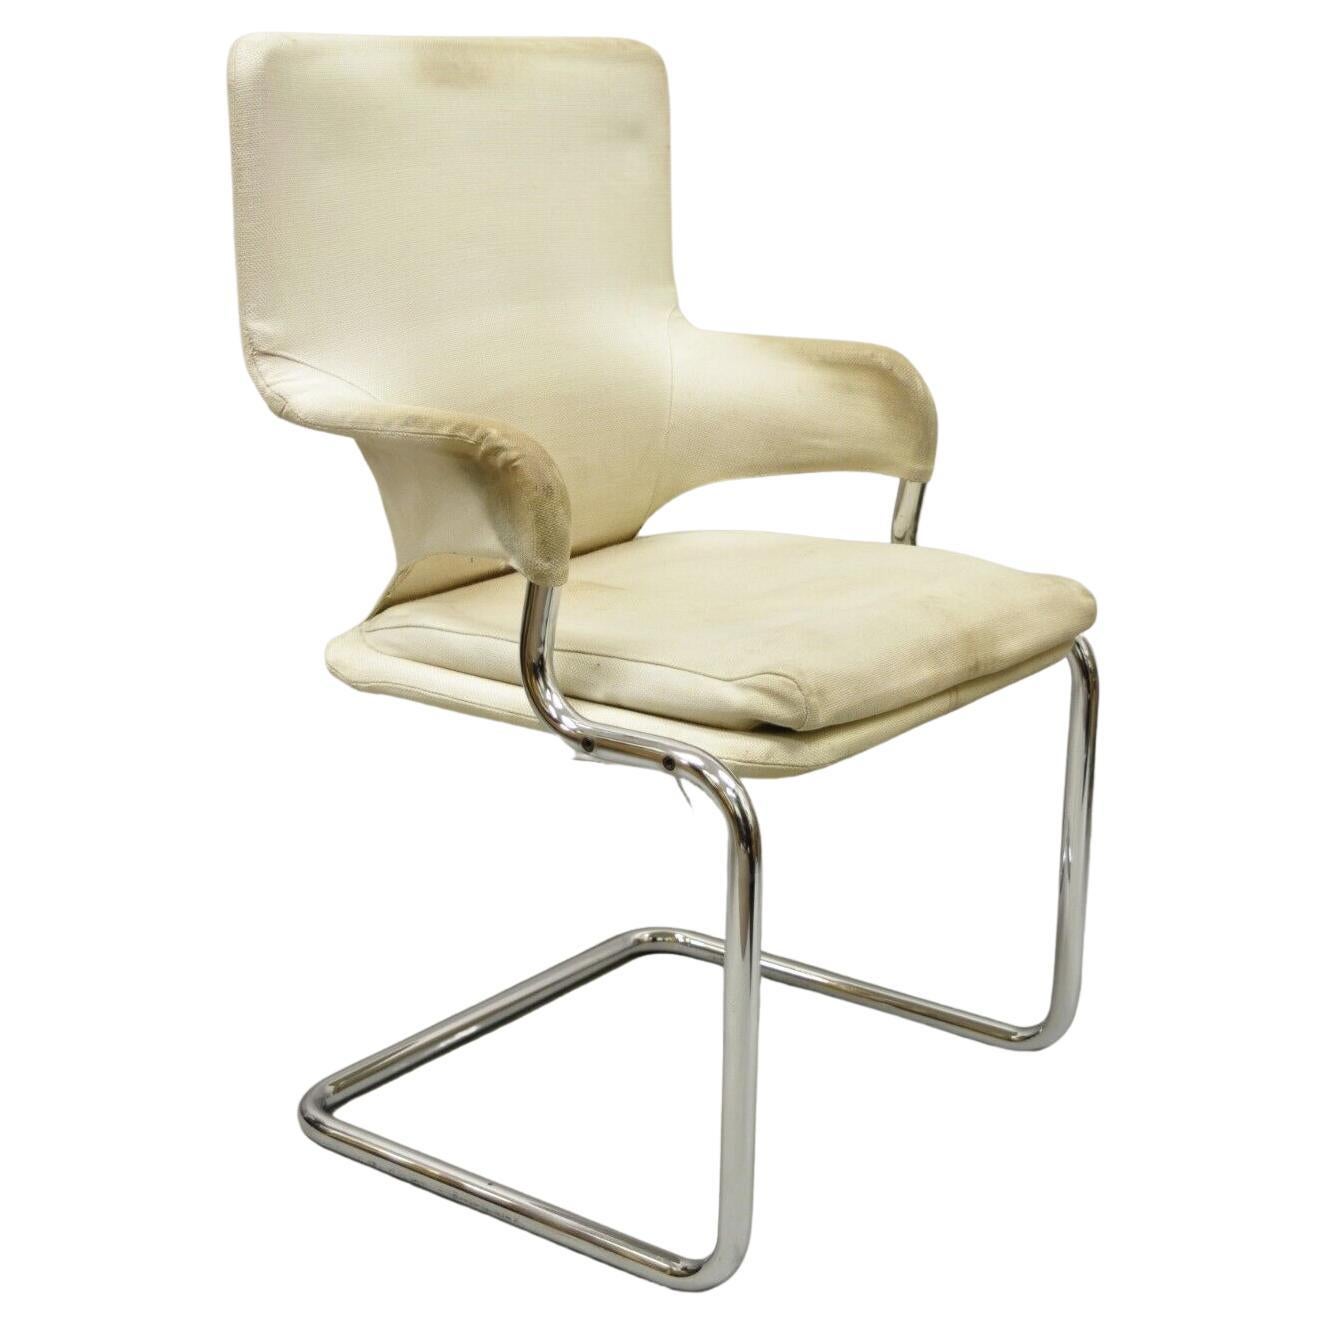 Vintage Mid-Century Modern Tubular Chrome Arm Chair with Burlap Seat